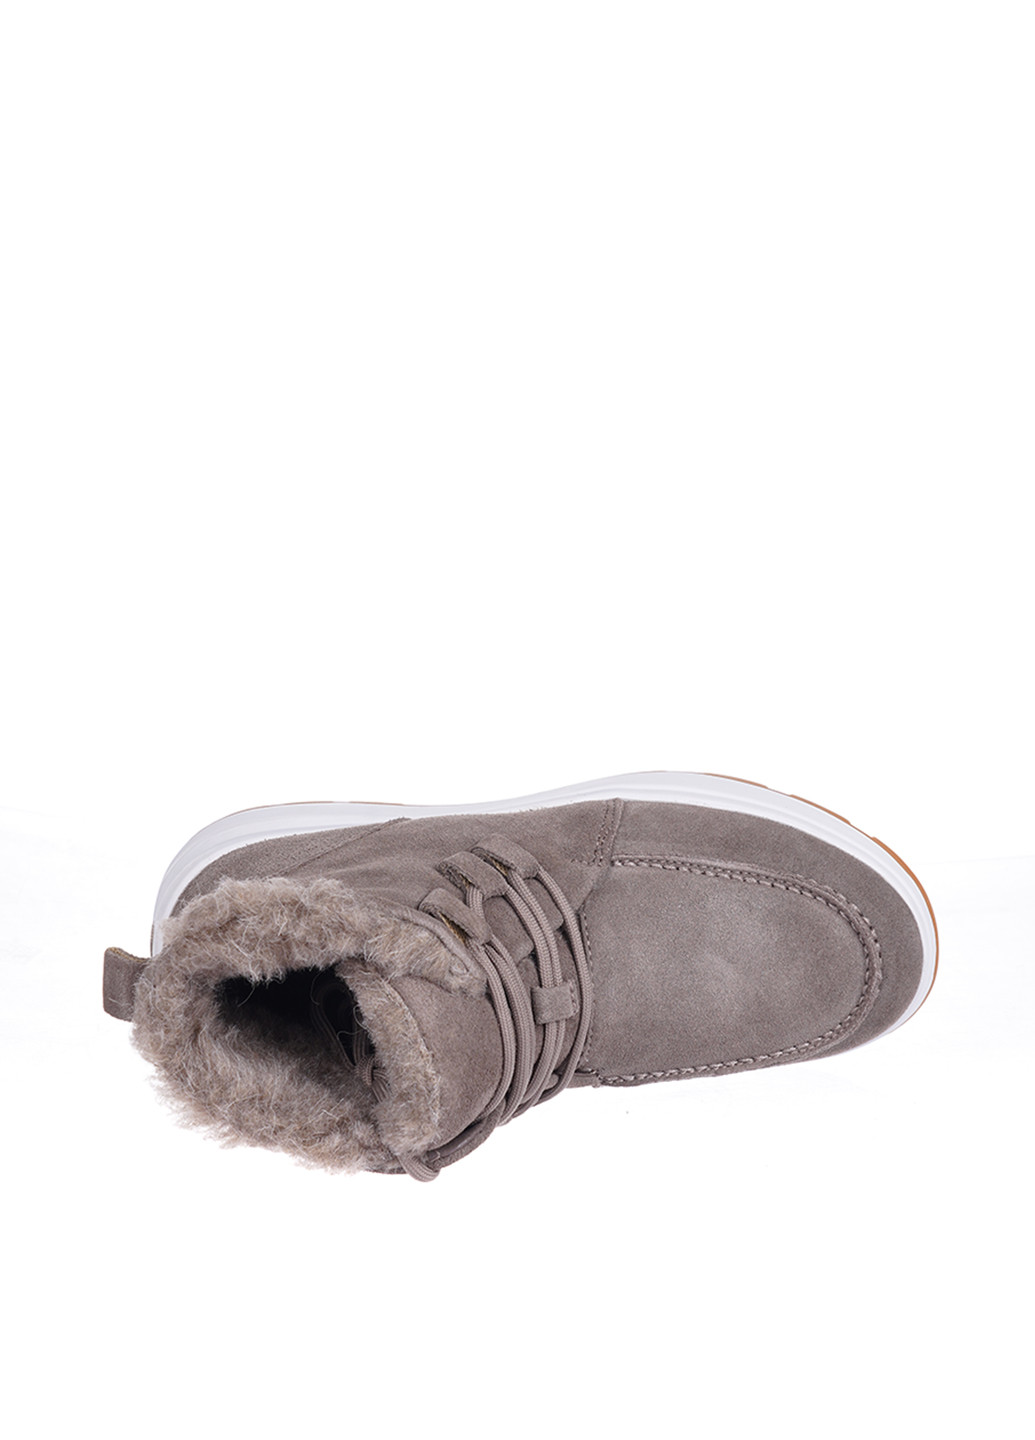 Зимние ботинки Prima d'Arte с белой подошвой из натуральной замши